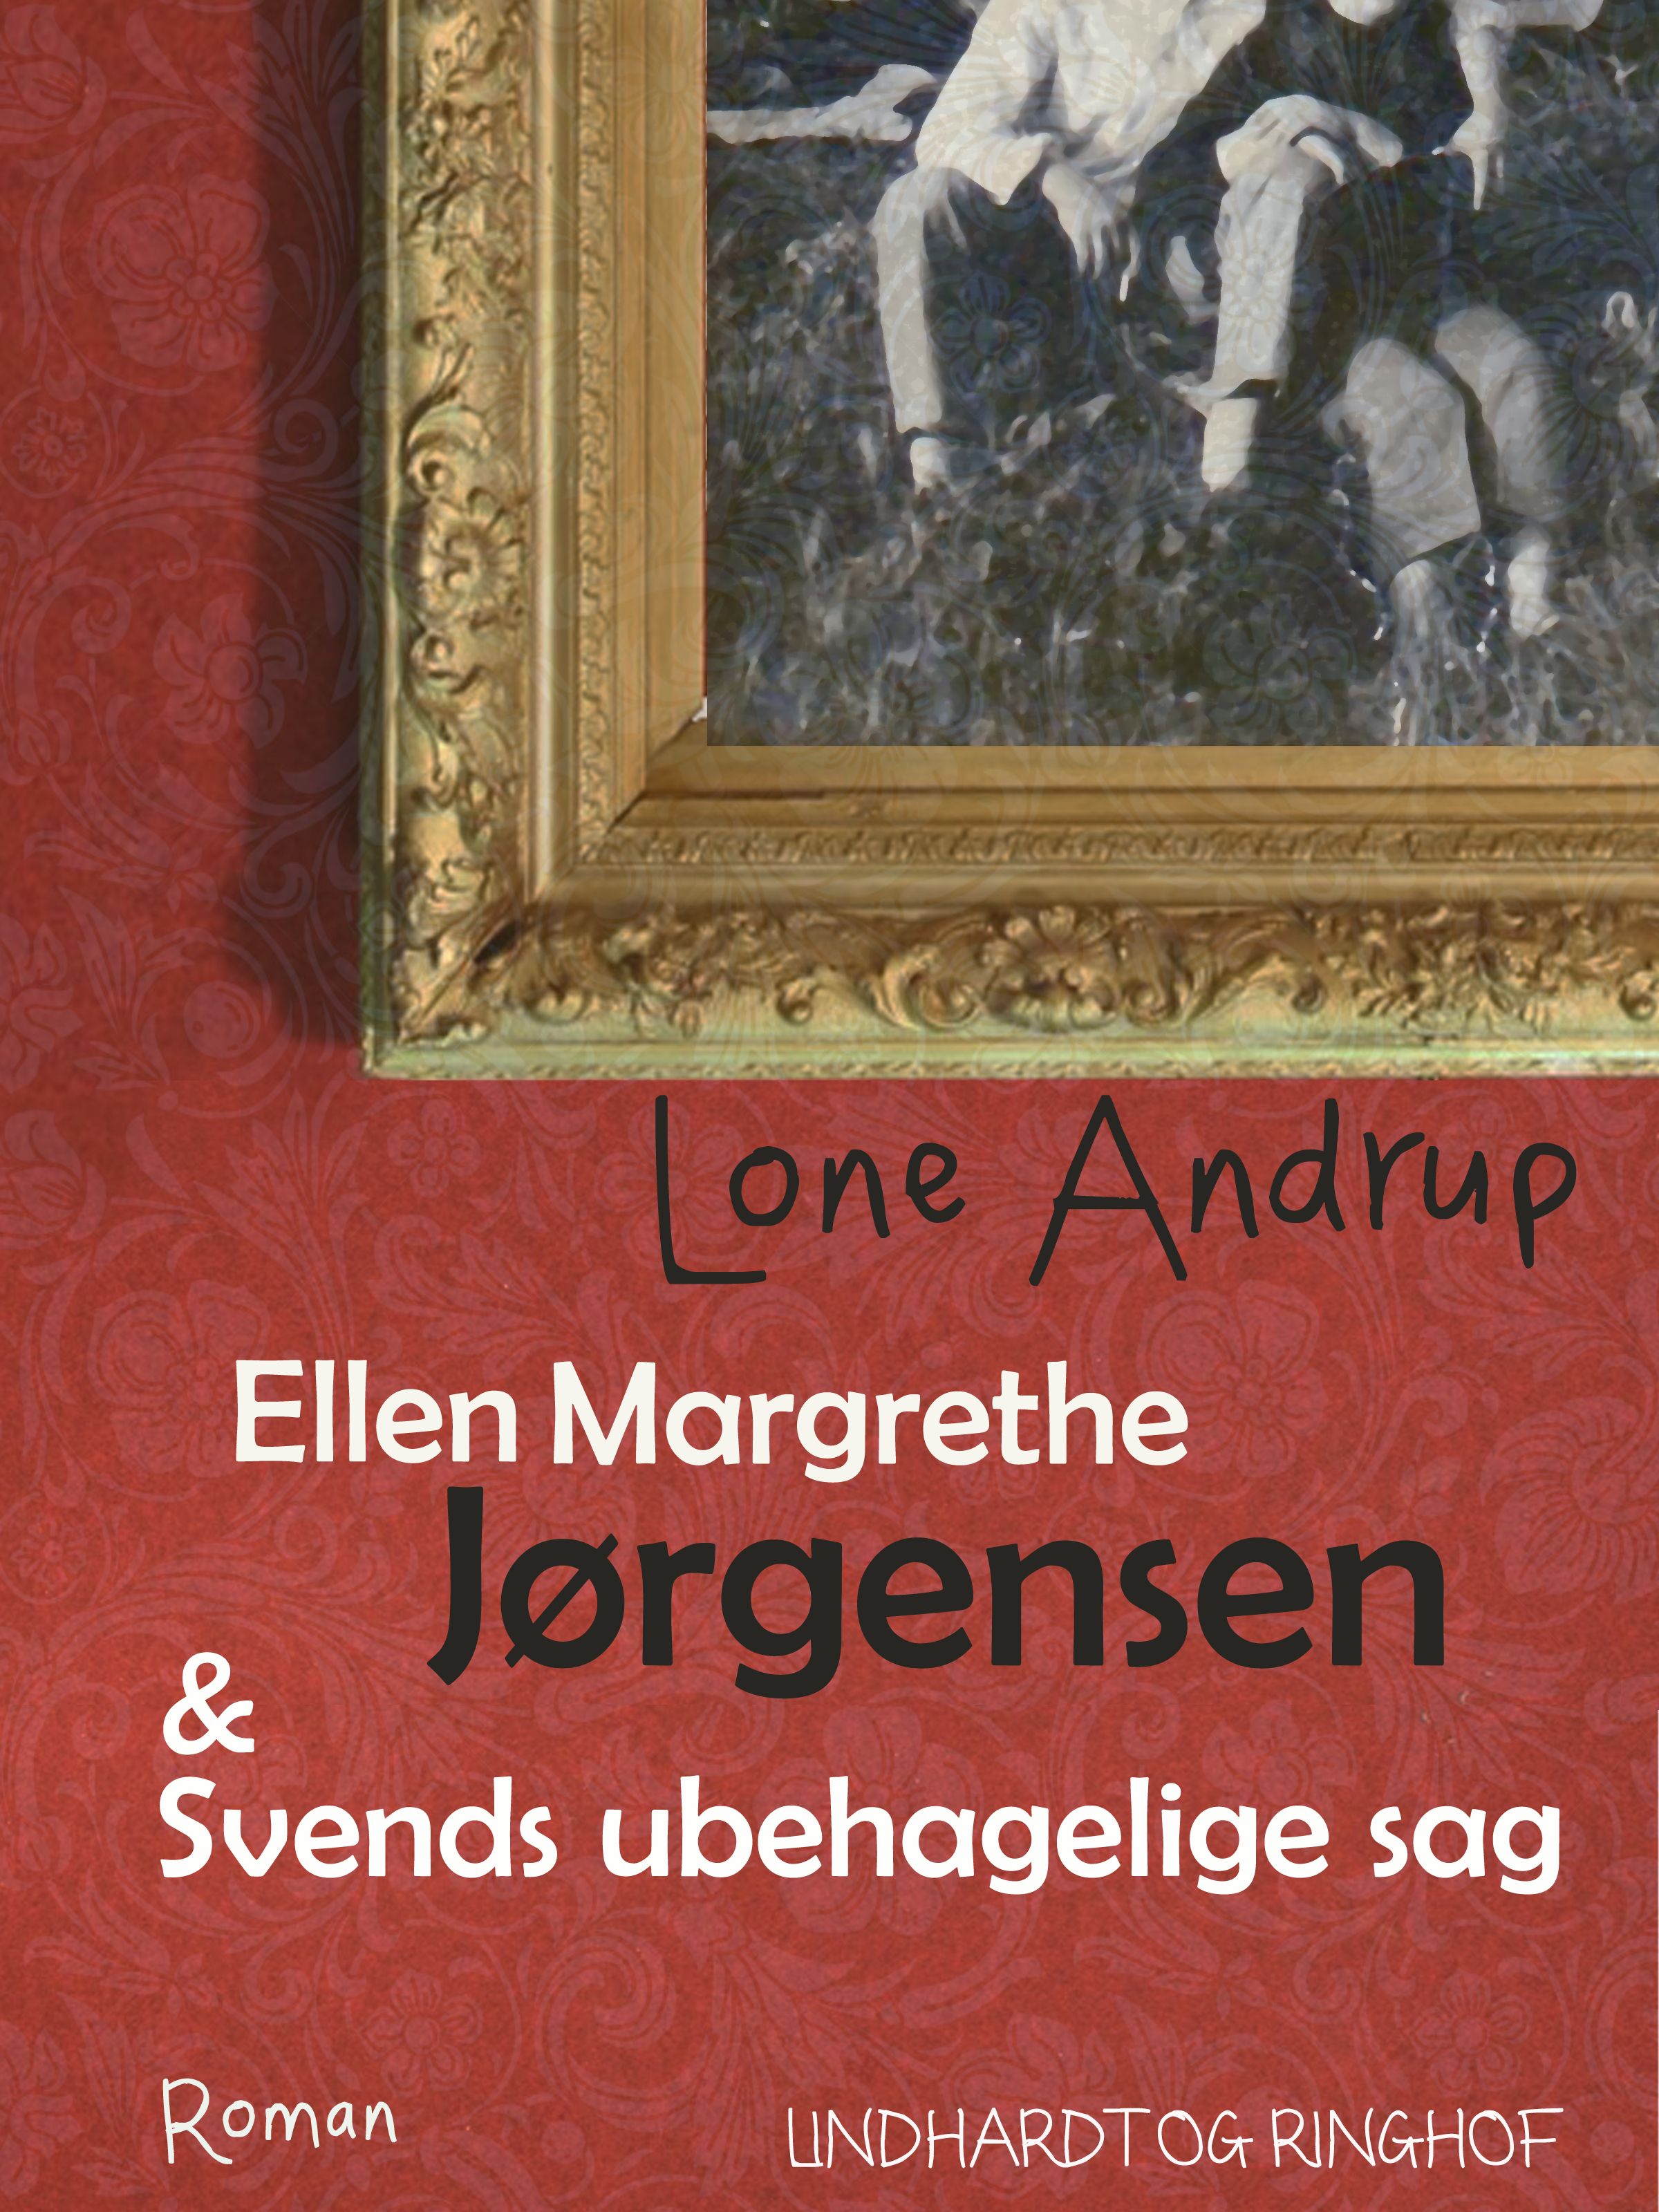 Ellen Margrethe Jørgensen & Svends ubehagelige sag, eBook by Lone Andrup